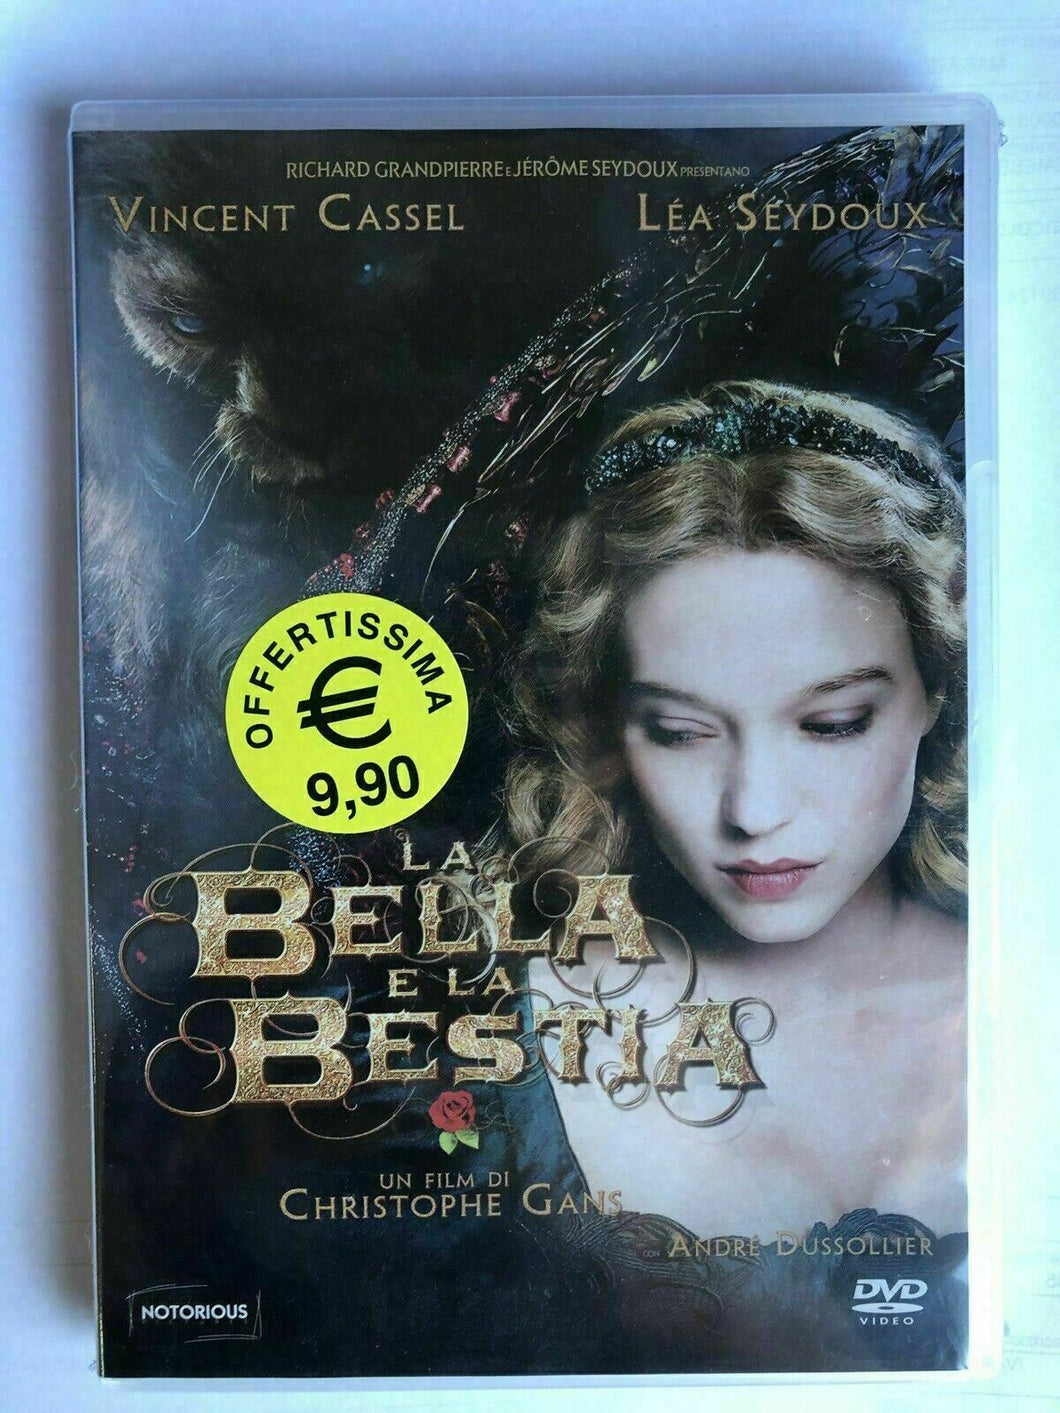 La bella e la bestia (2014) Dvd Notorious Nuovo Sigillato